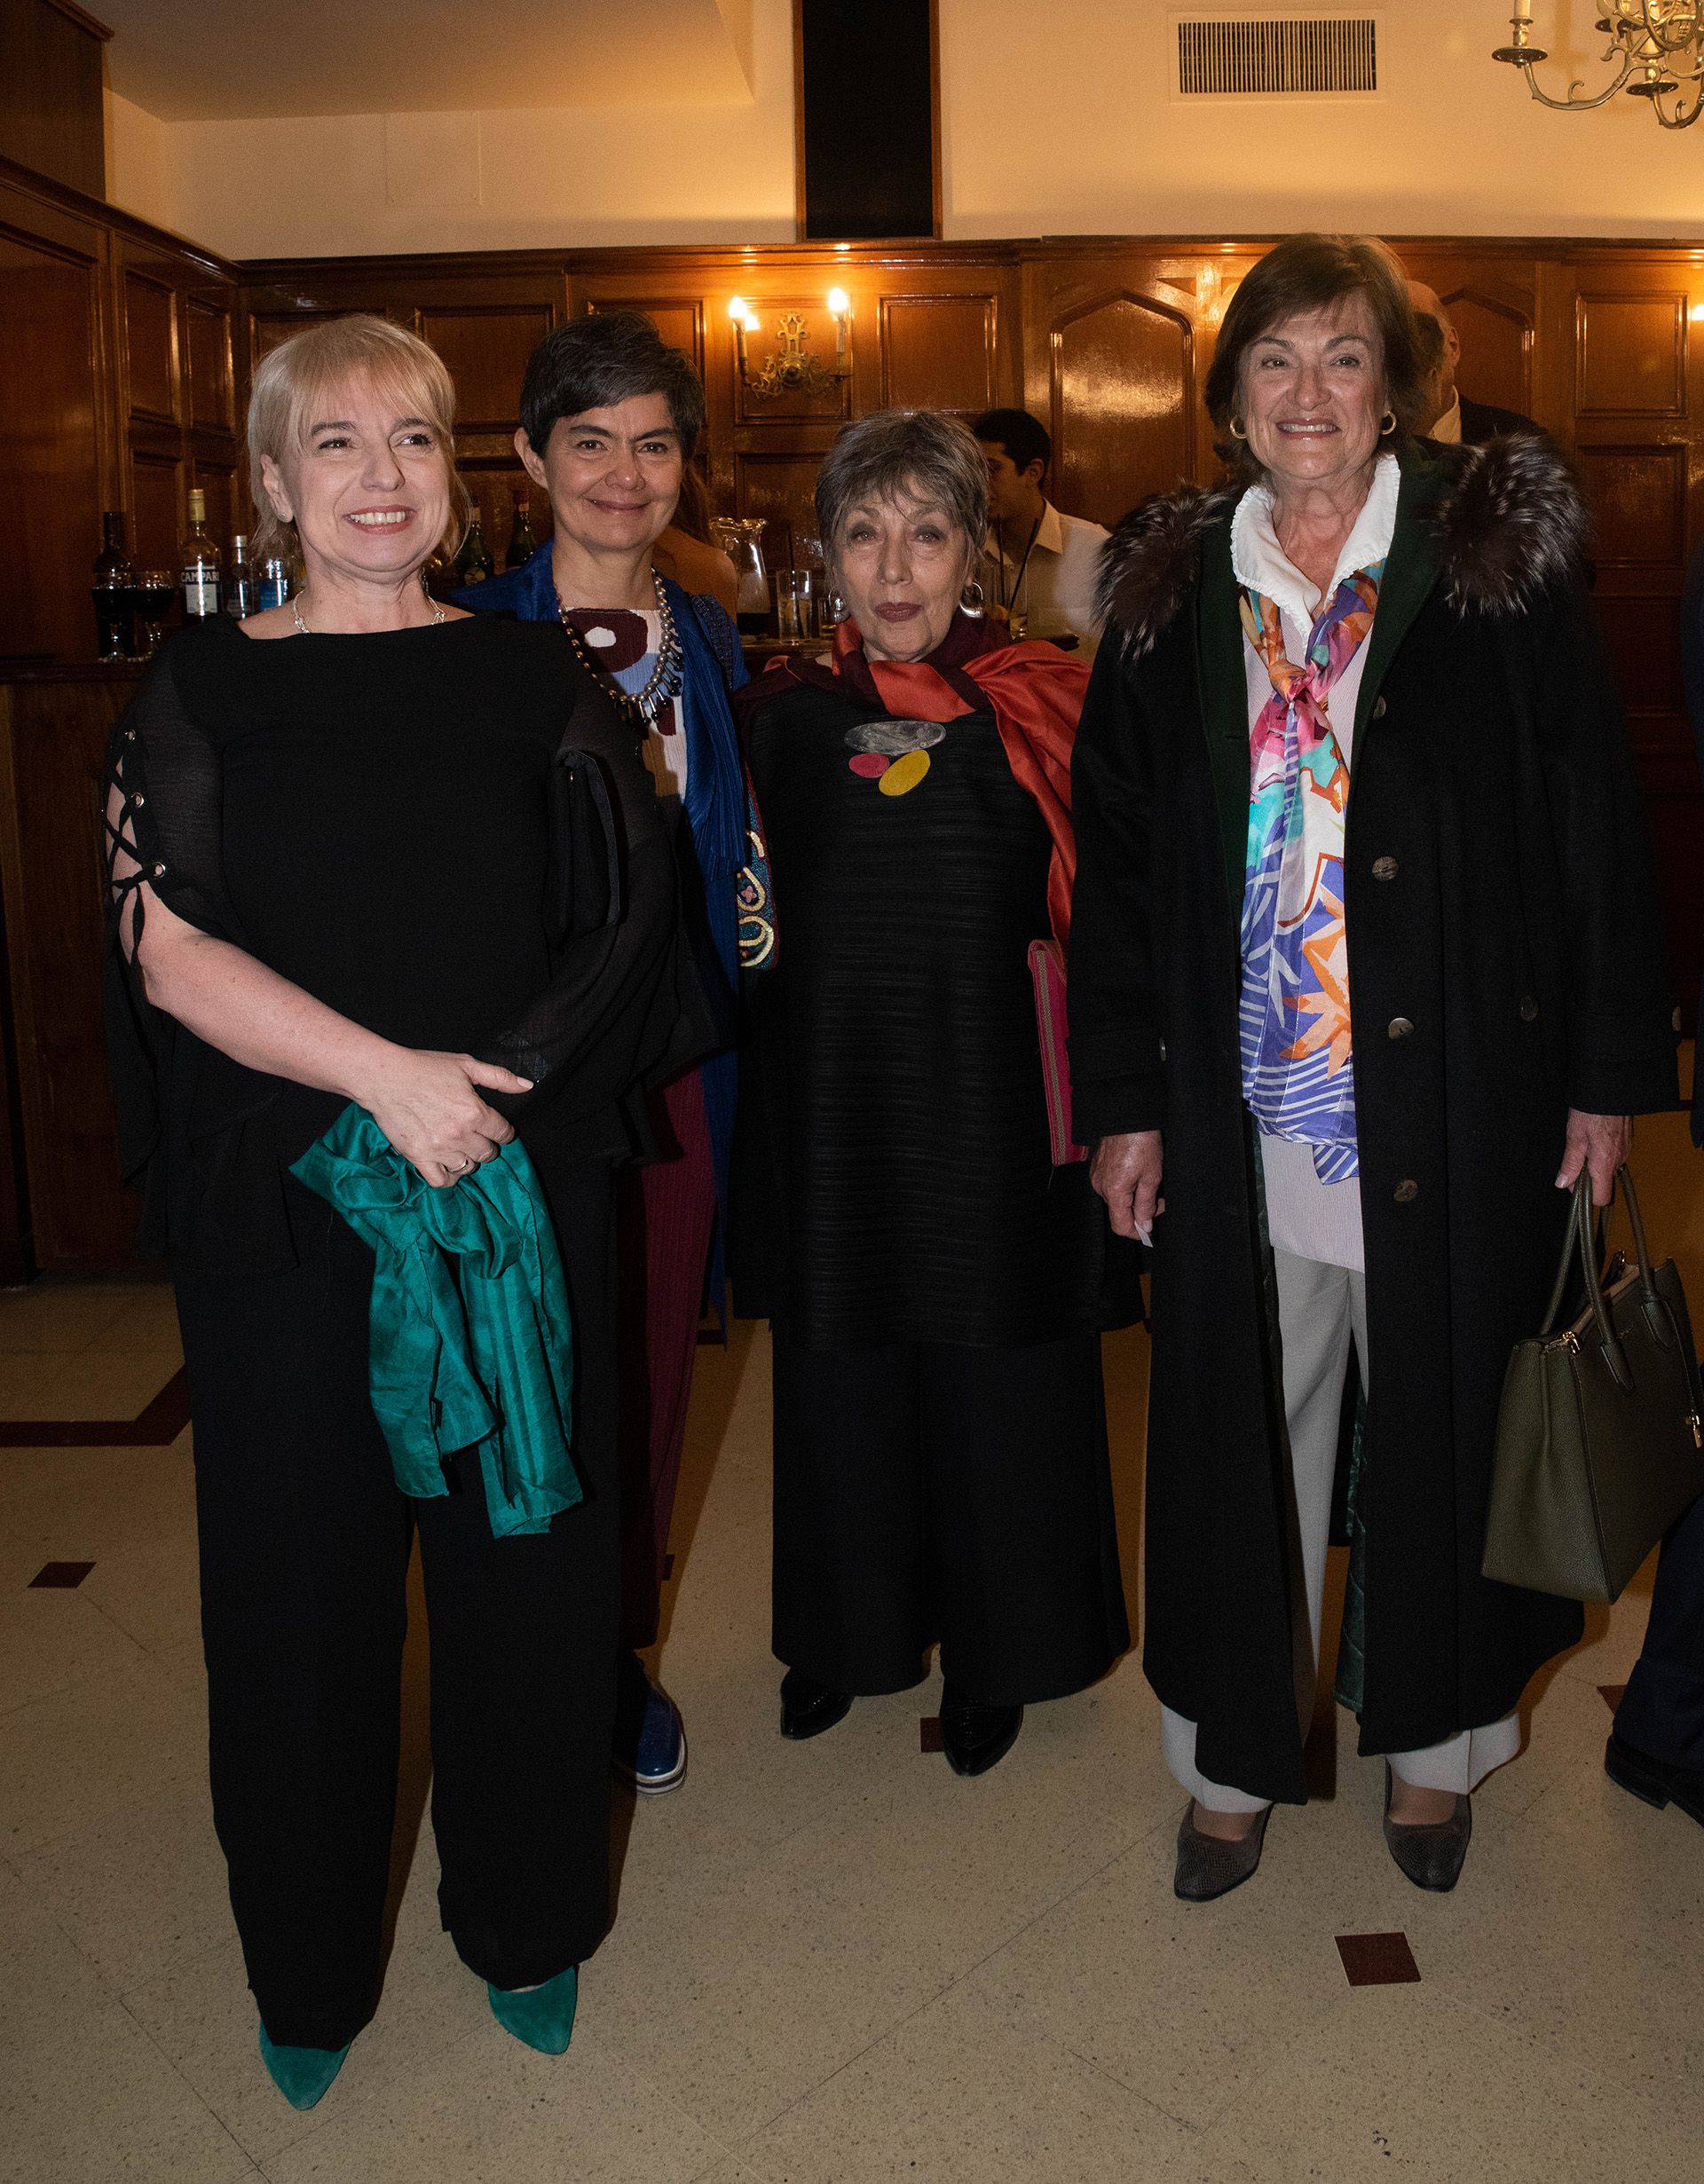 Silvana Giudici, titular del Enacom; María Eugenia Estenssoro; Norma Morandini; María Angélica Gelli, miembro del Consejo Consultivo de la Asociación Argentina de Derecho Constitucional